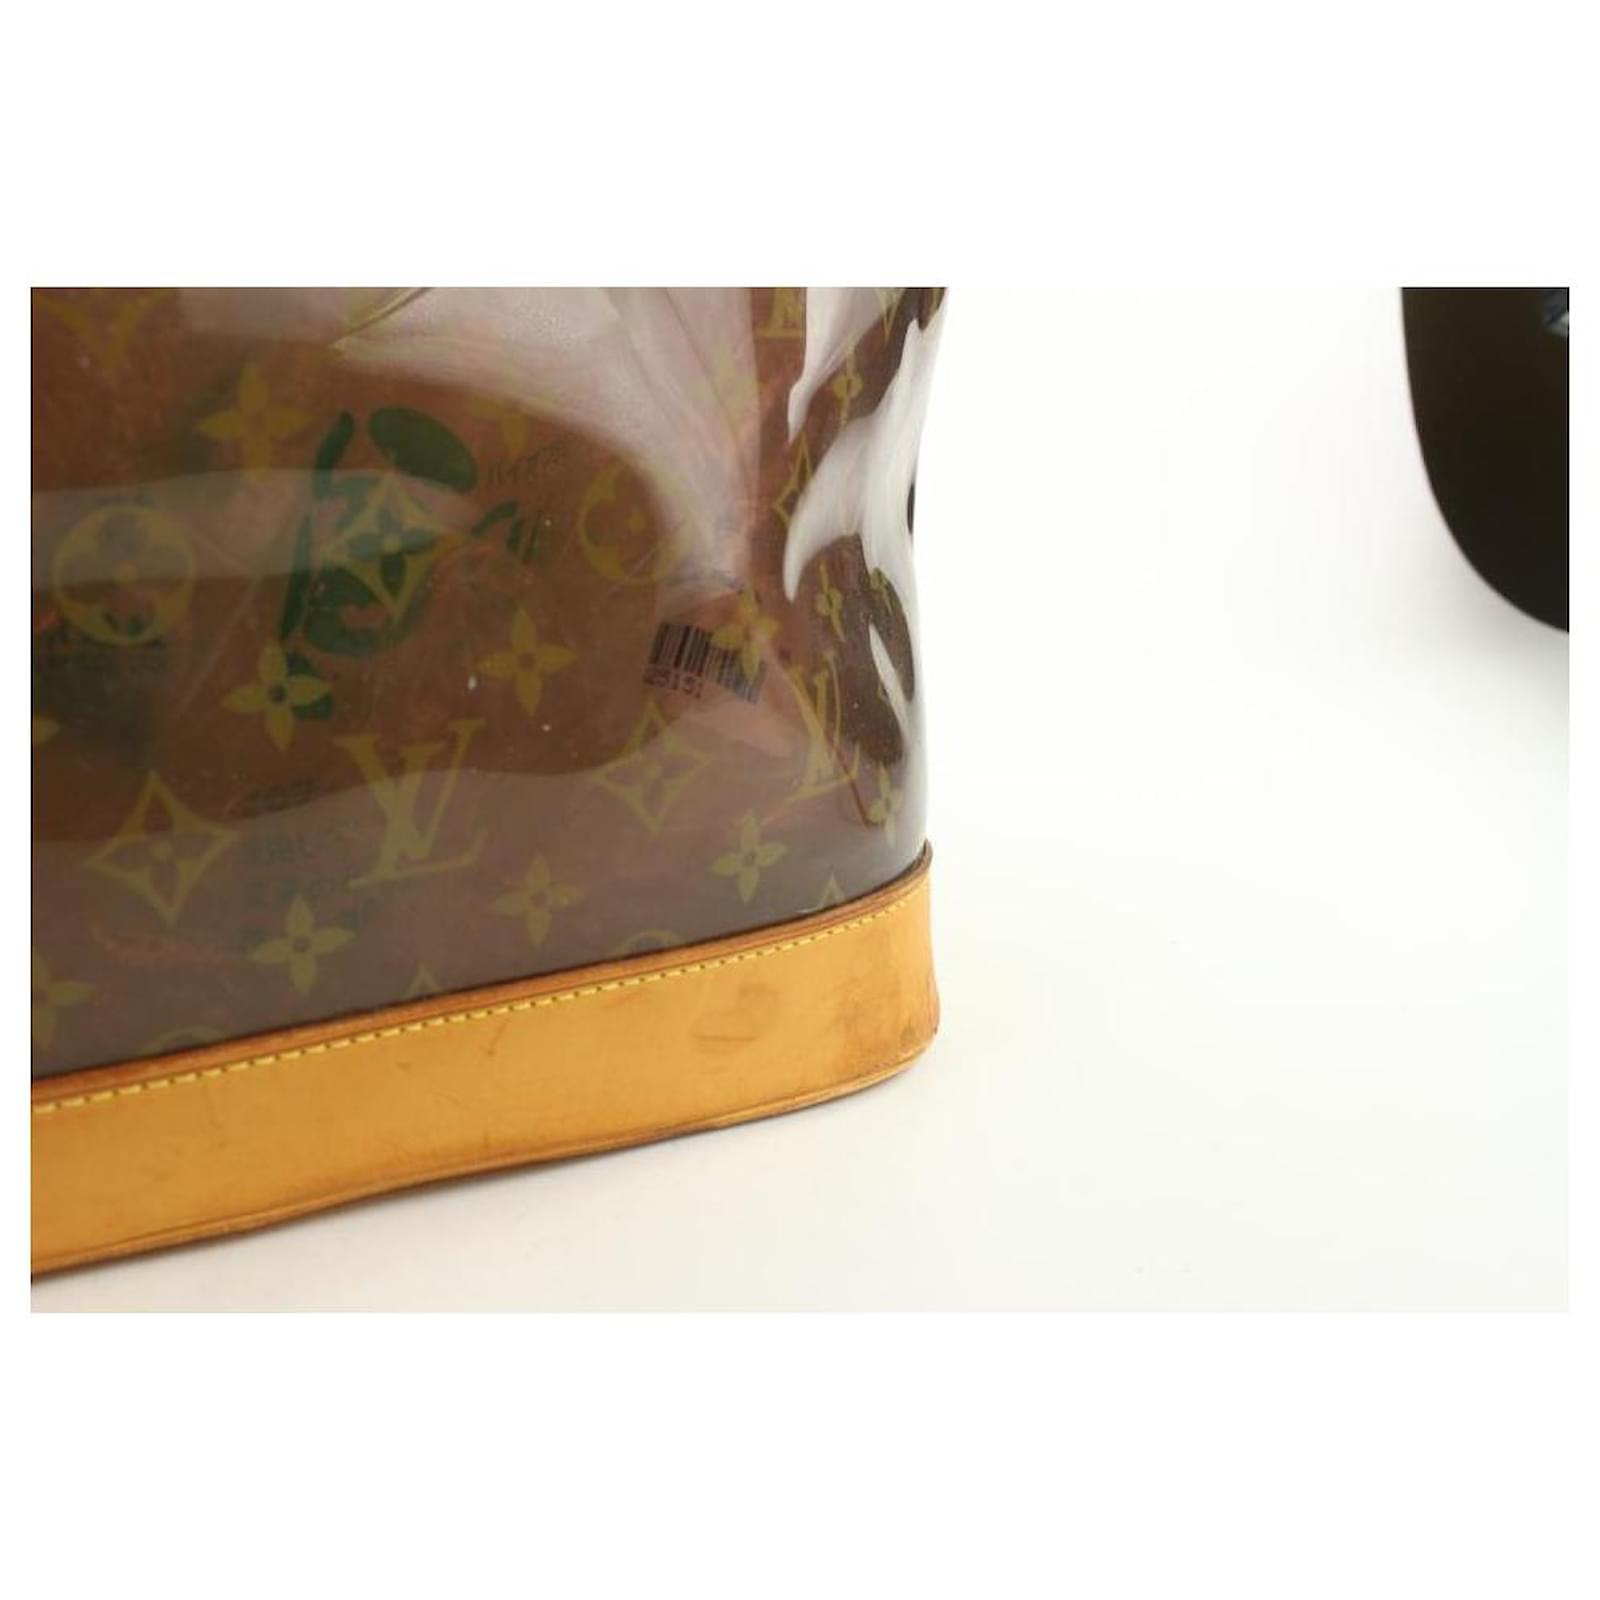 Louis Vuitton Neo Cabas Transparent Tote Bag